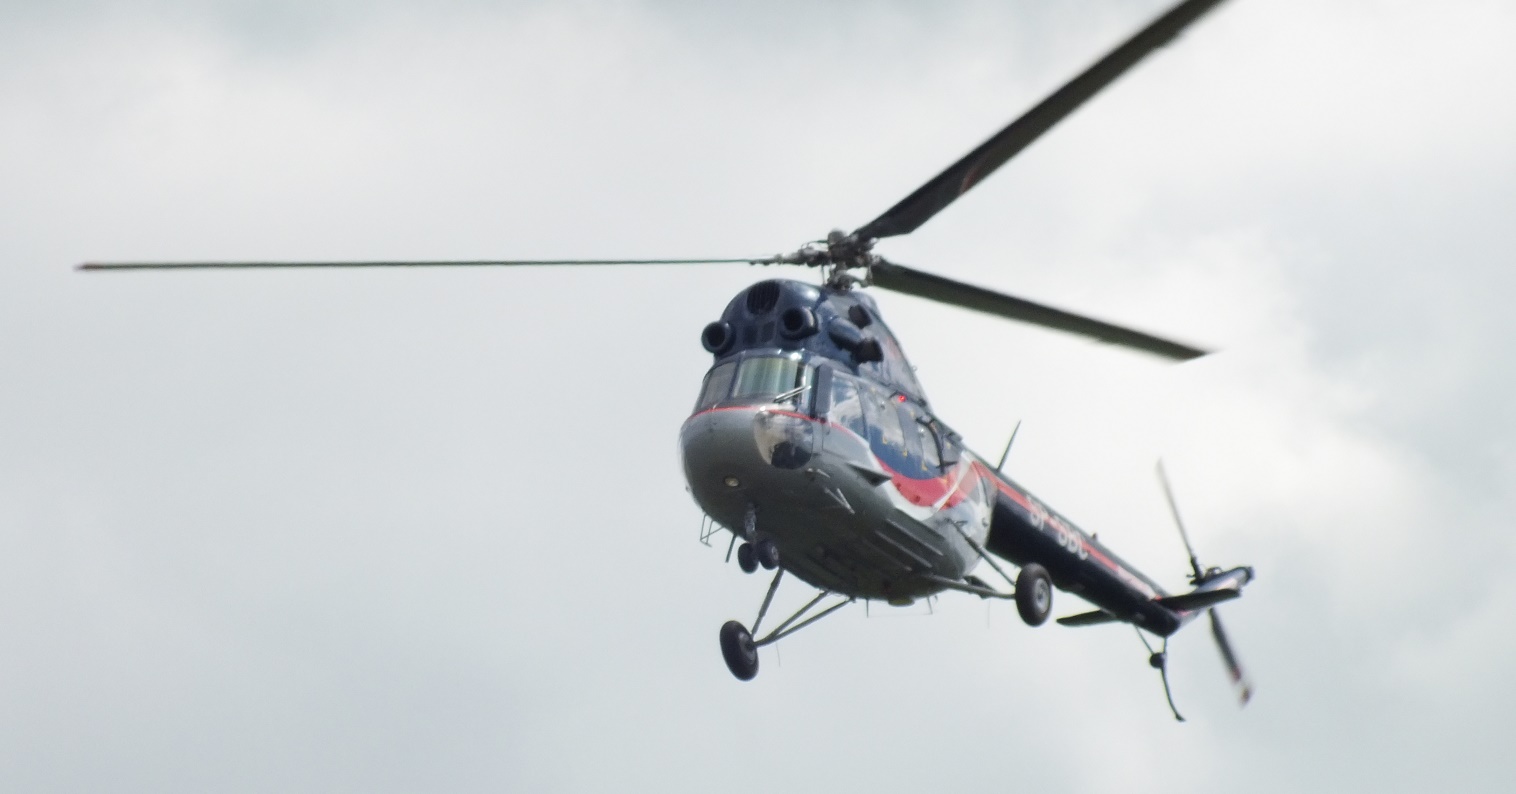 Pokaz śmigłowca Mi-2 pilotowanego przez instruktora PWSZ w Chełmie